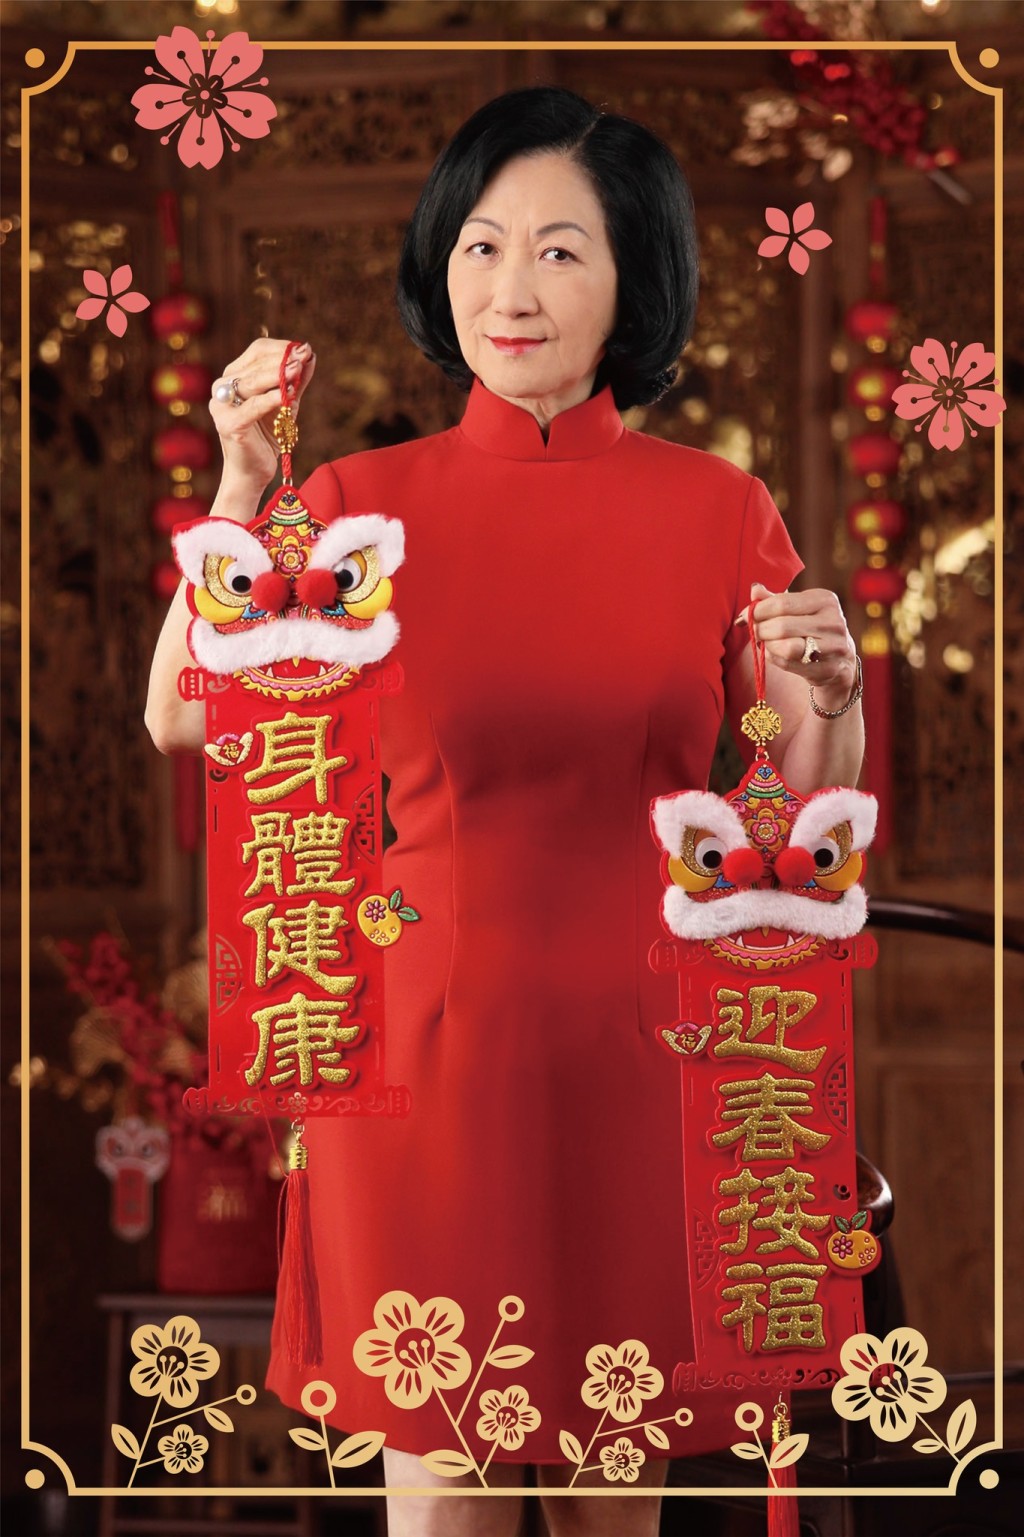 叶太身穿带有百合图案的红色旗袍，向市民拜年。叶刘淑仪FB